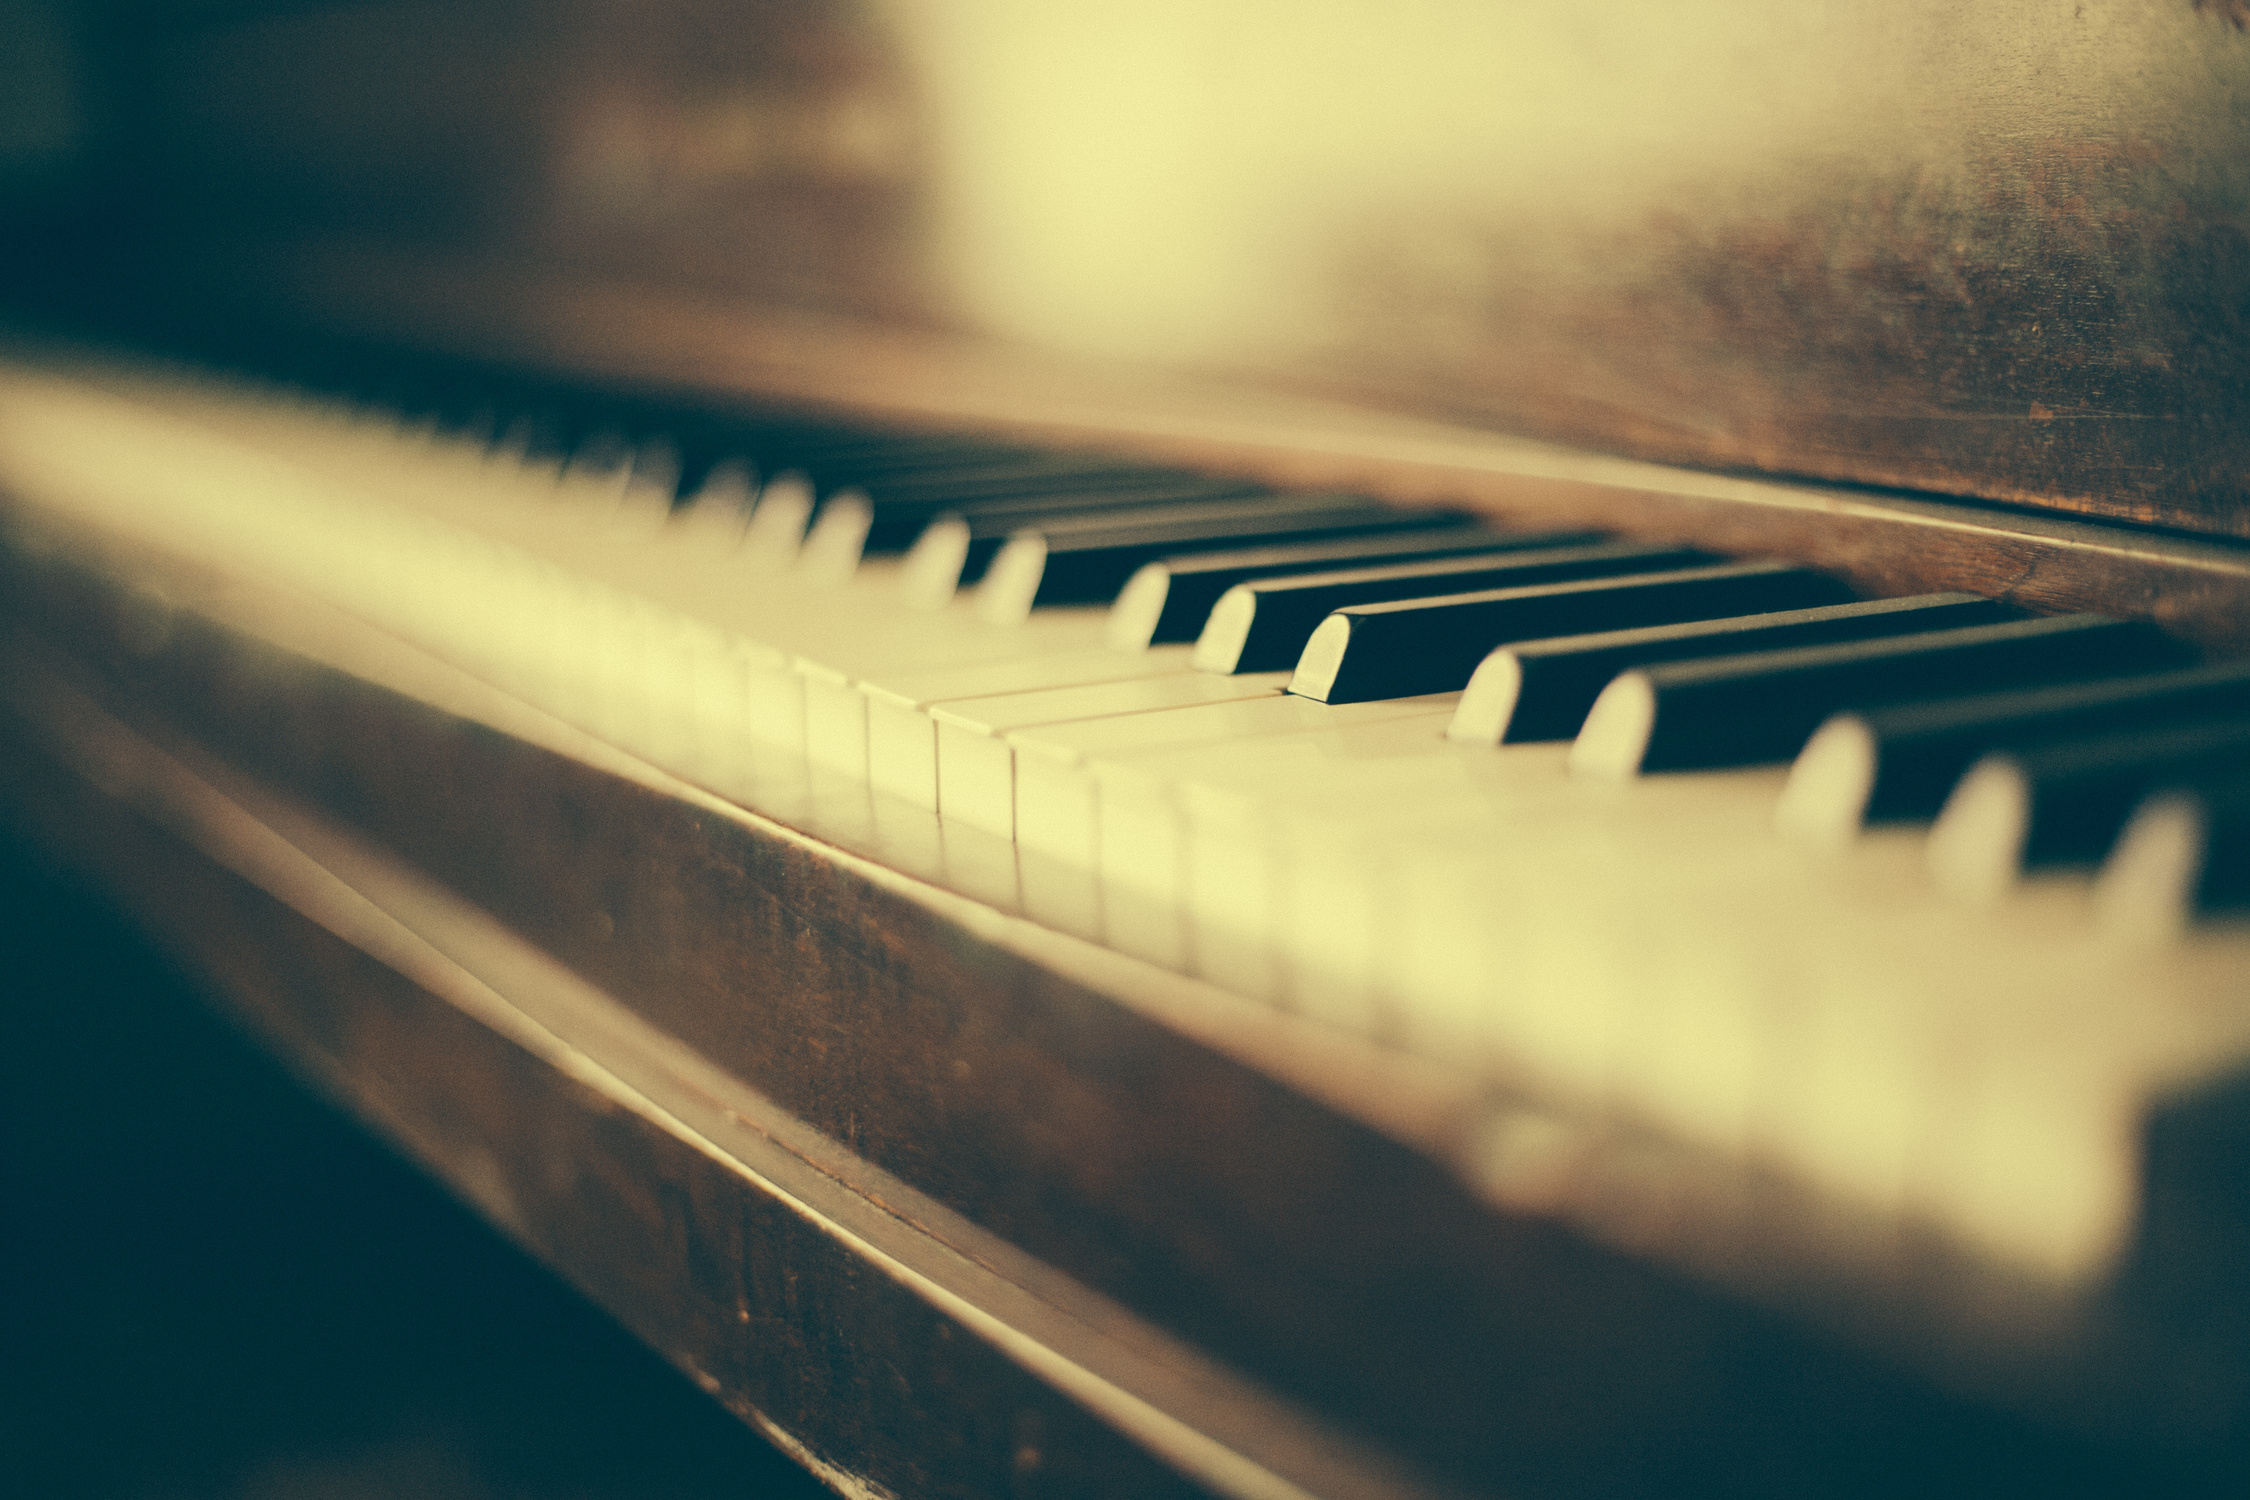 Keys of a Piano